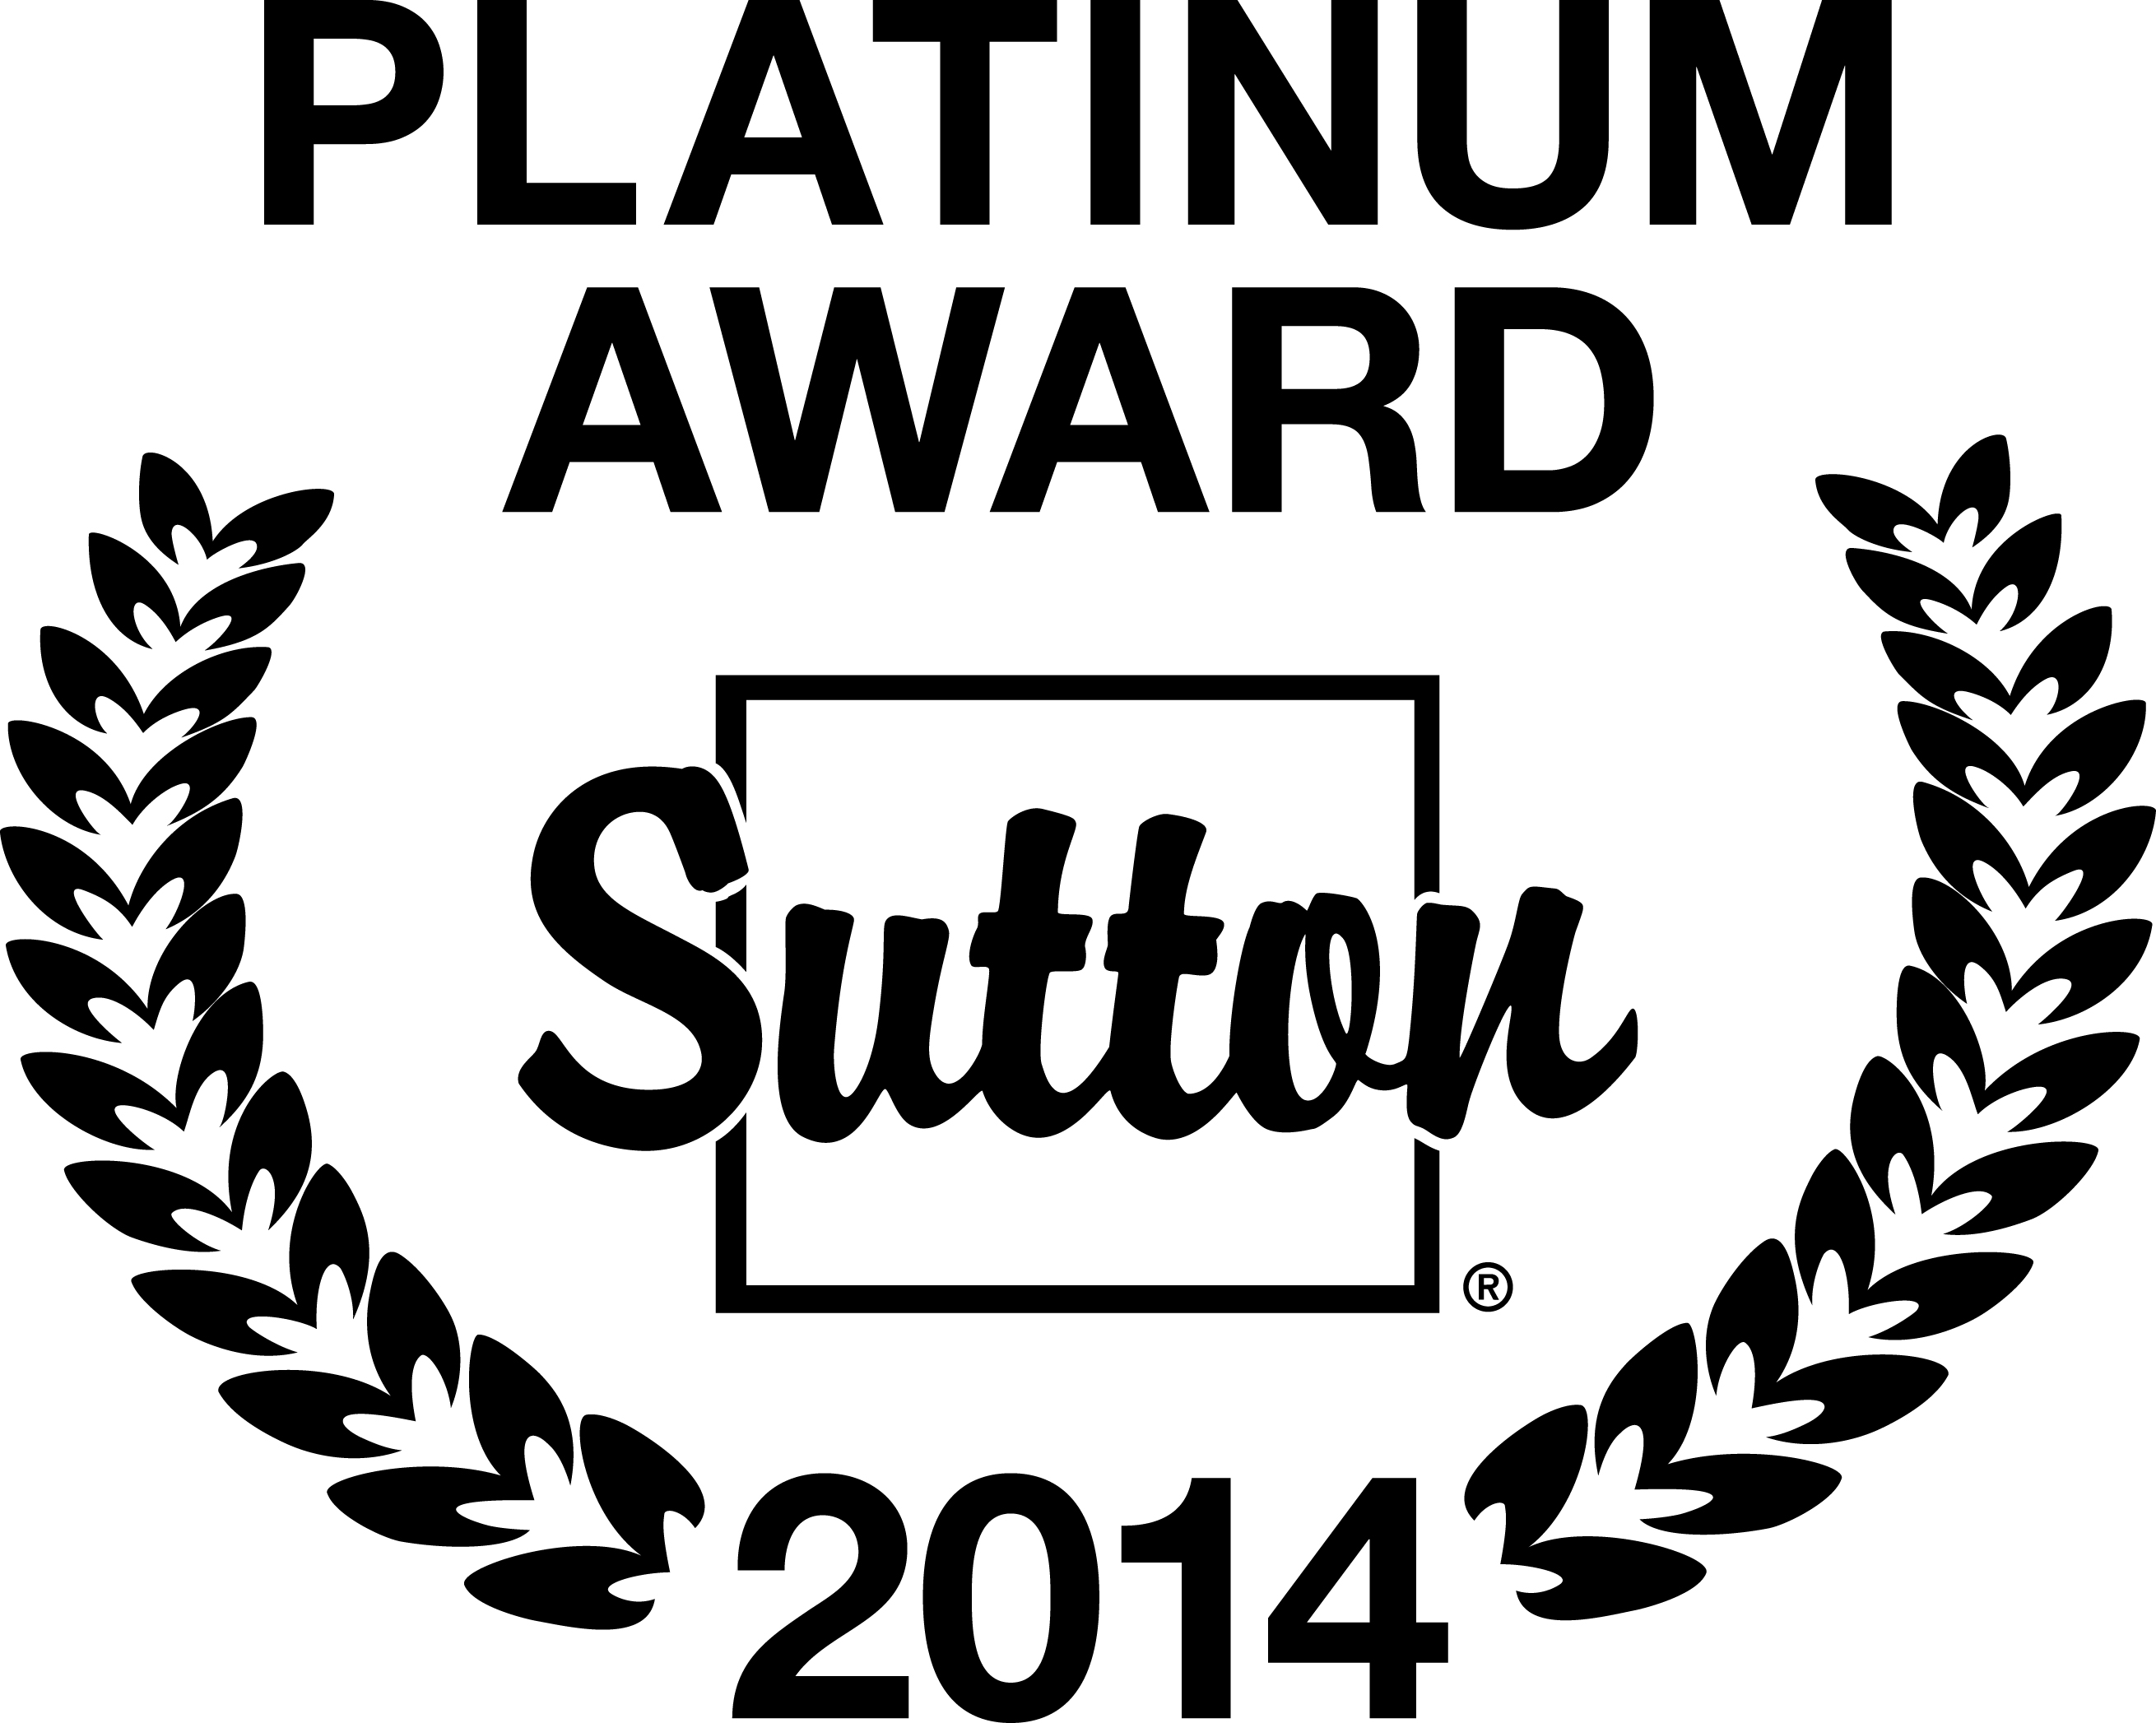 Platinum Award 2014